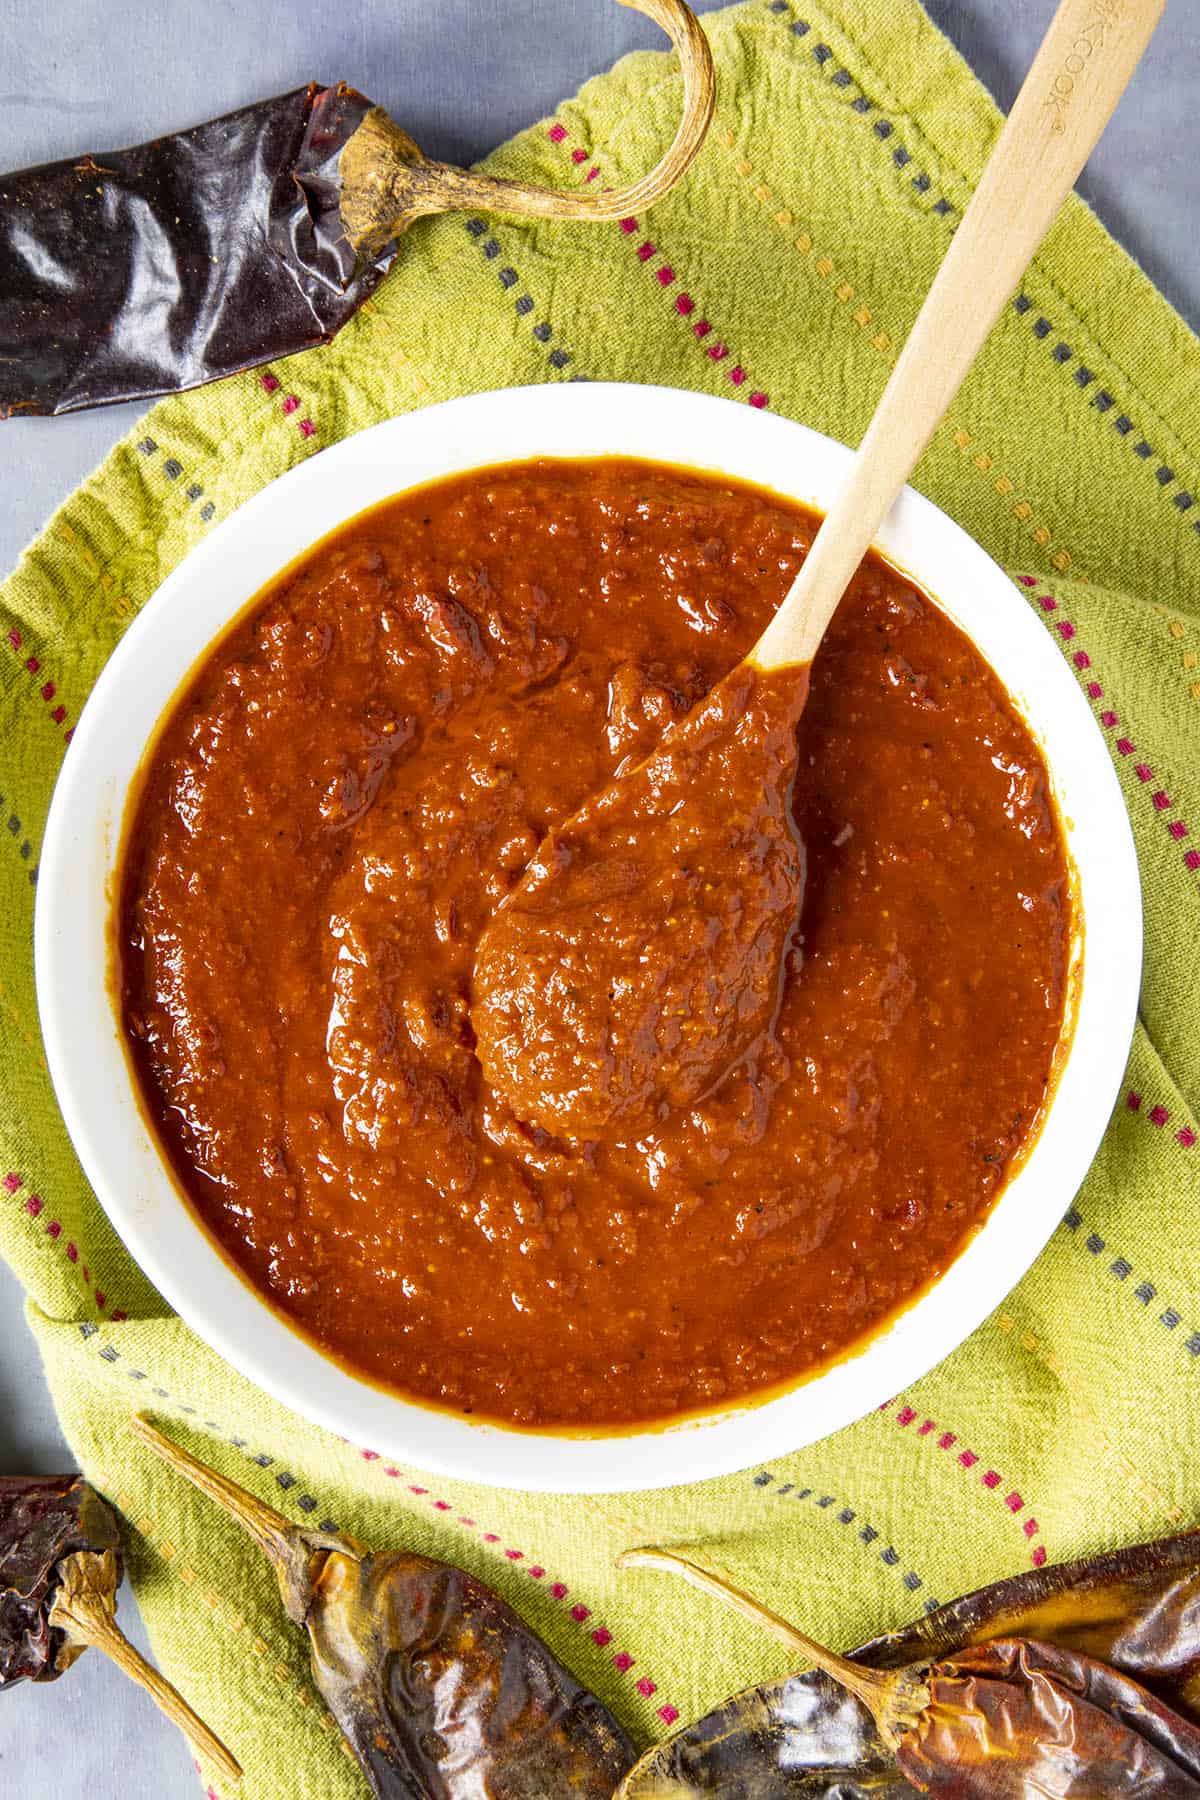 Homemade guajillo sauce in a bowl